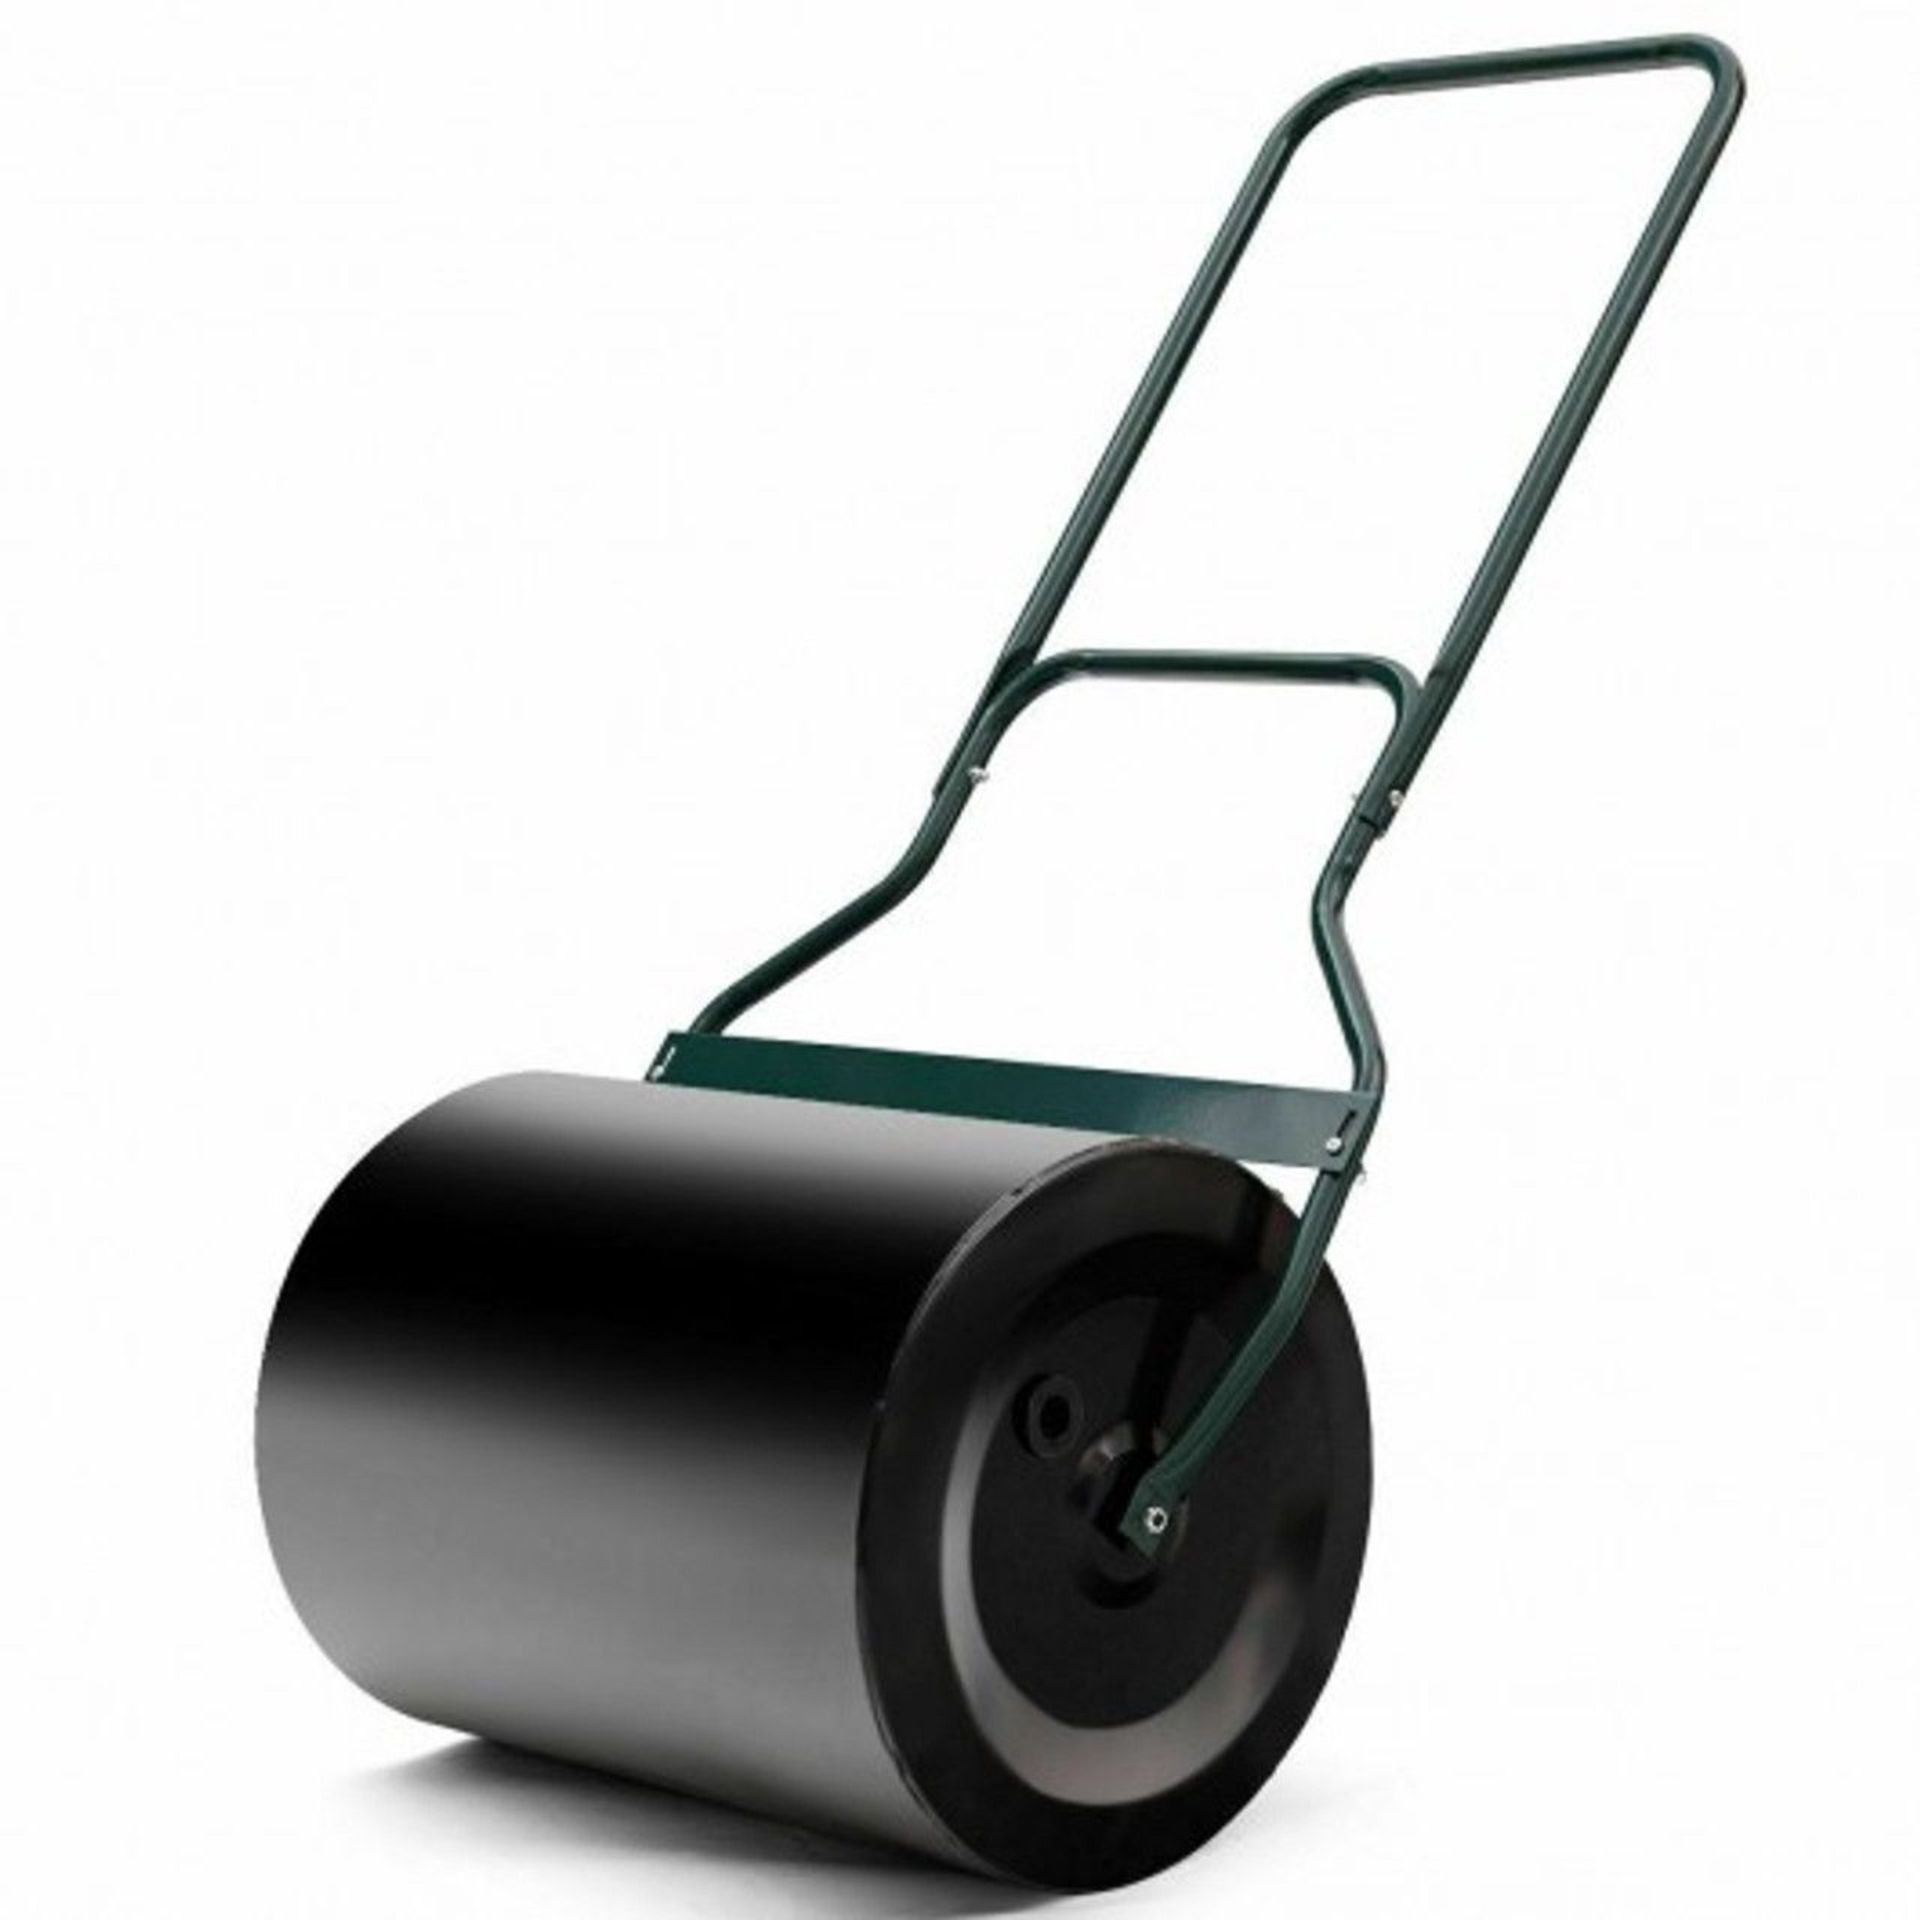 Heavy Duty Push Tow Lawn Roller Metal Roller. - Er53. The push/tow lawn roller is ideal for